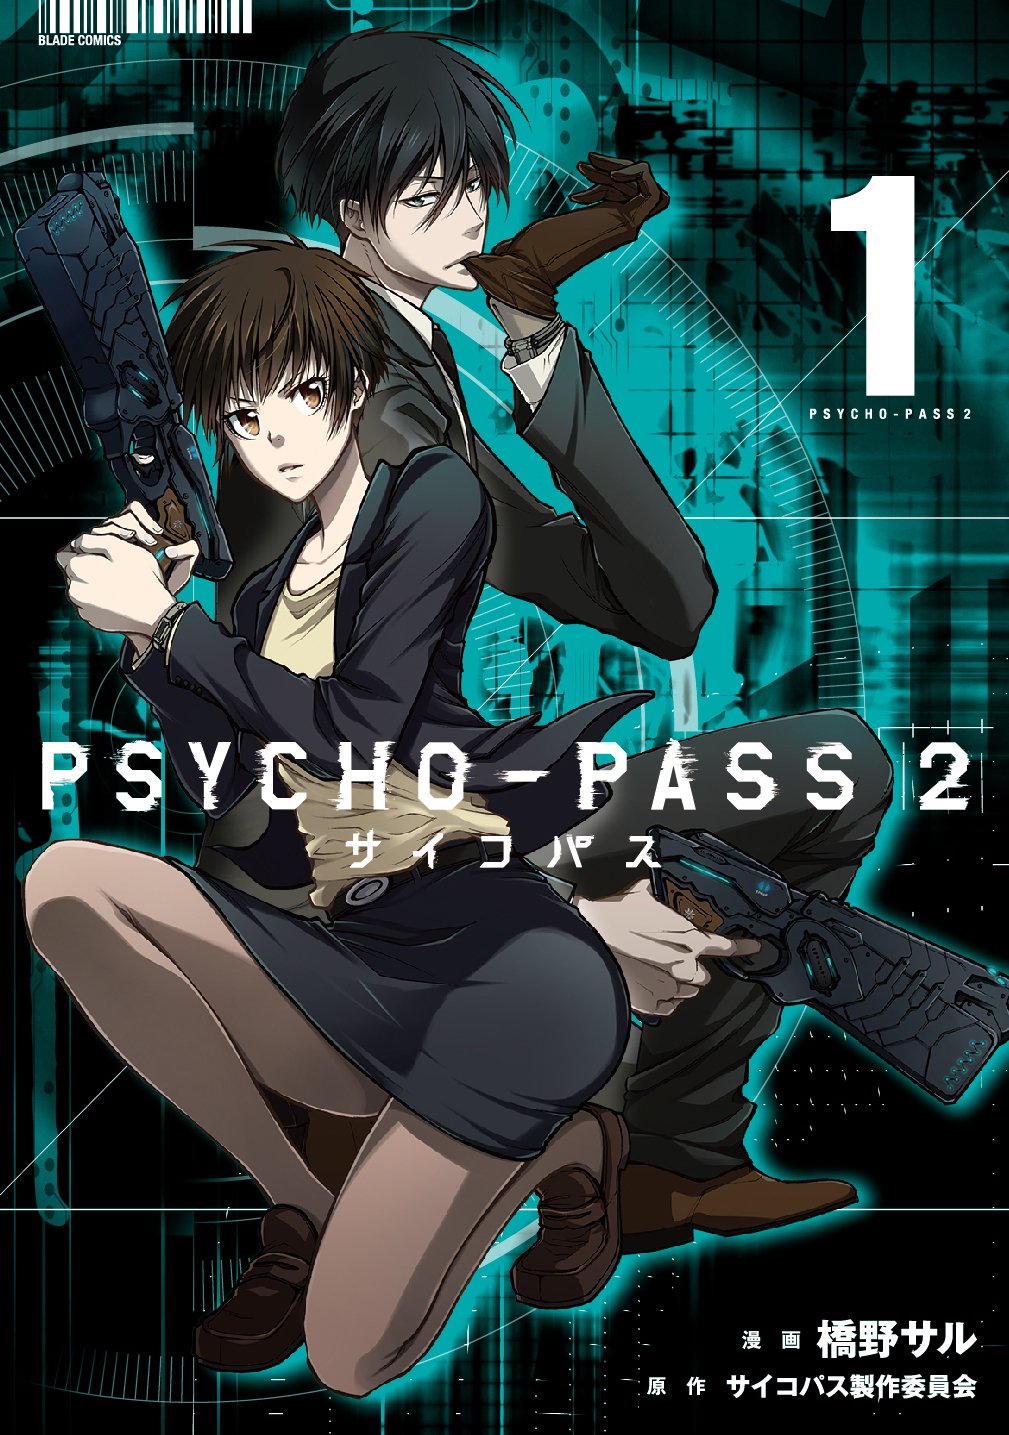 Psycho-Pass 2 (Manga) | Psycho-Pass Wiki | Fandom